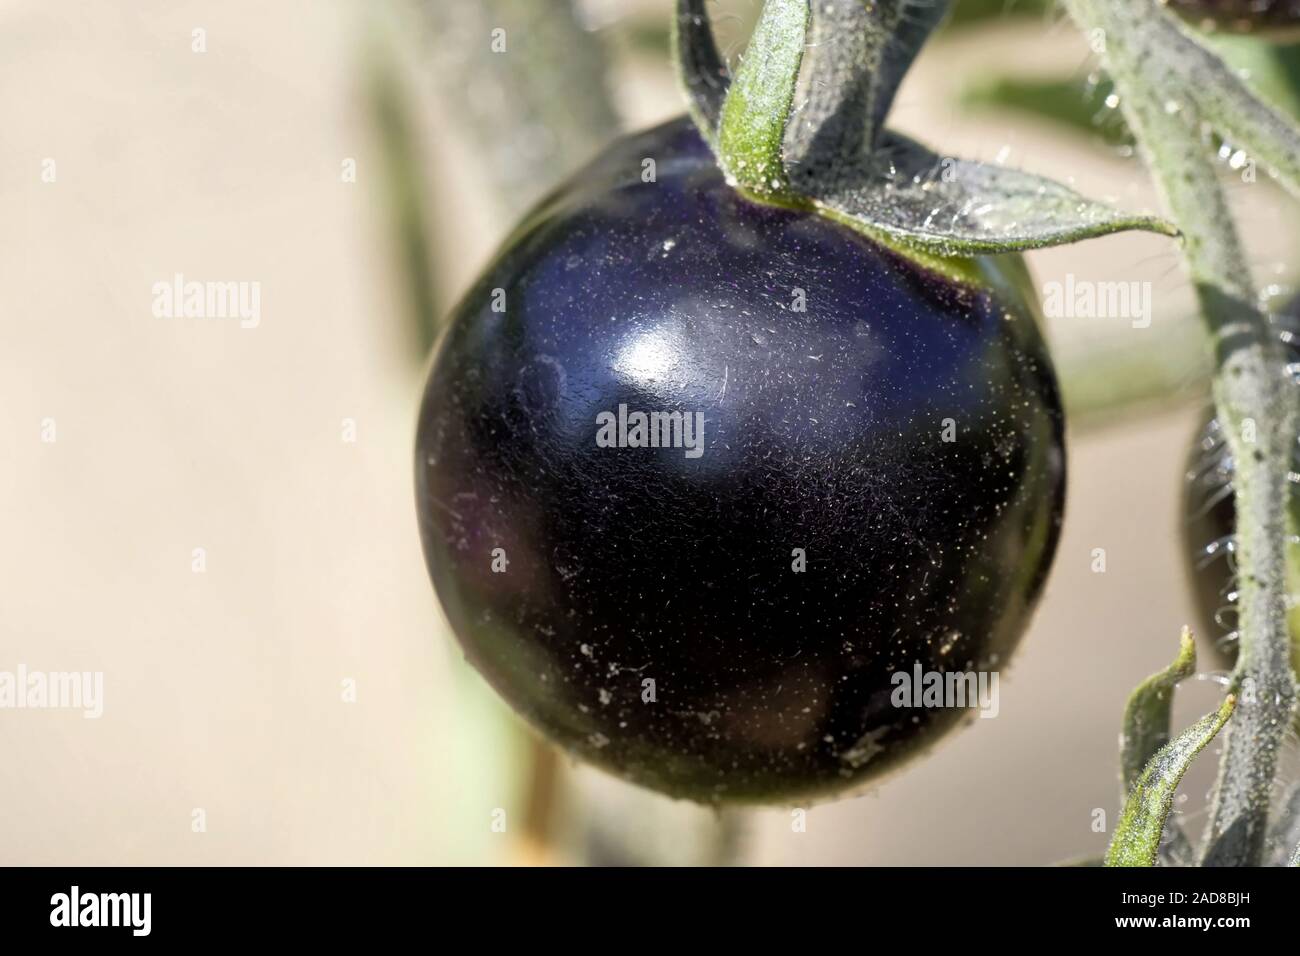 black tomato Stock Photo